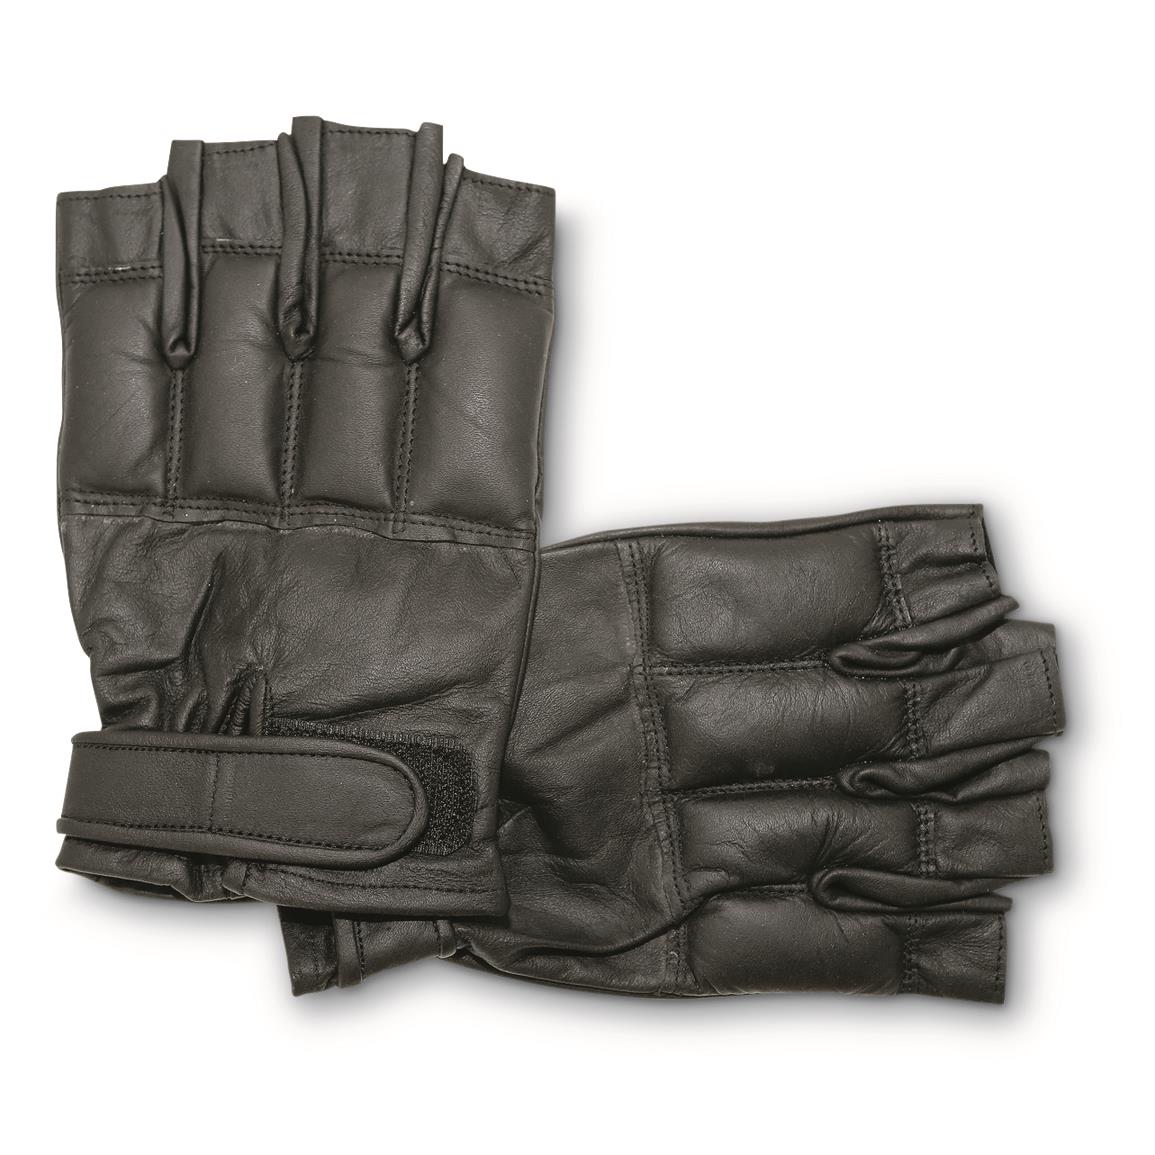 Adjustable wrist cinch for a snug fit, Black